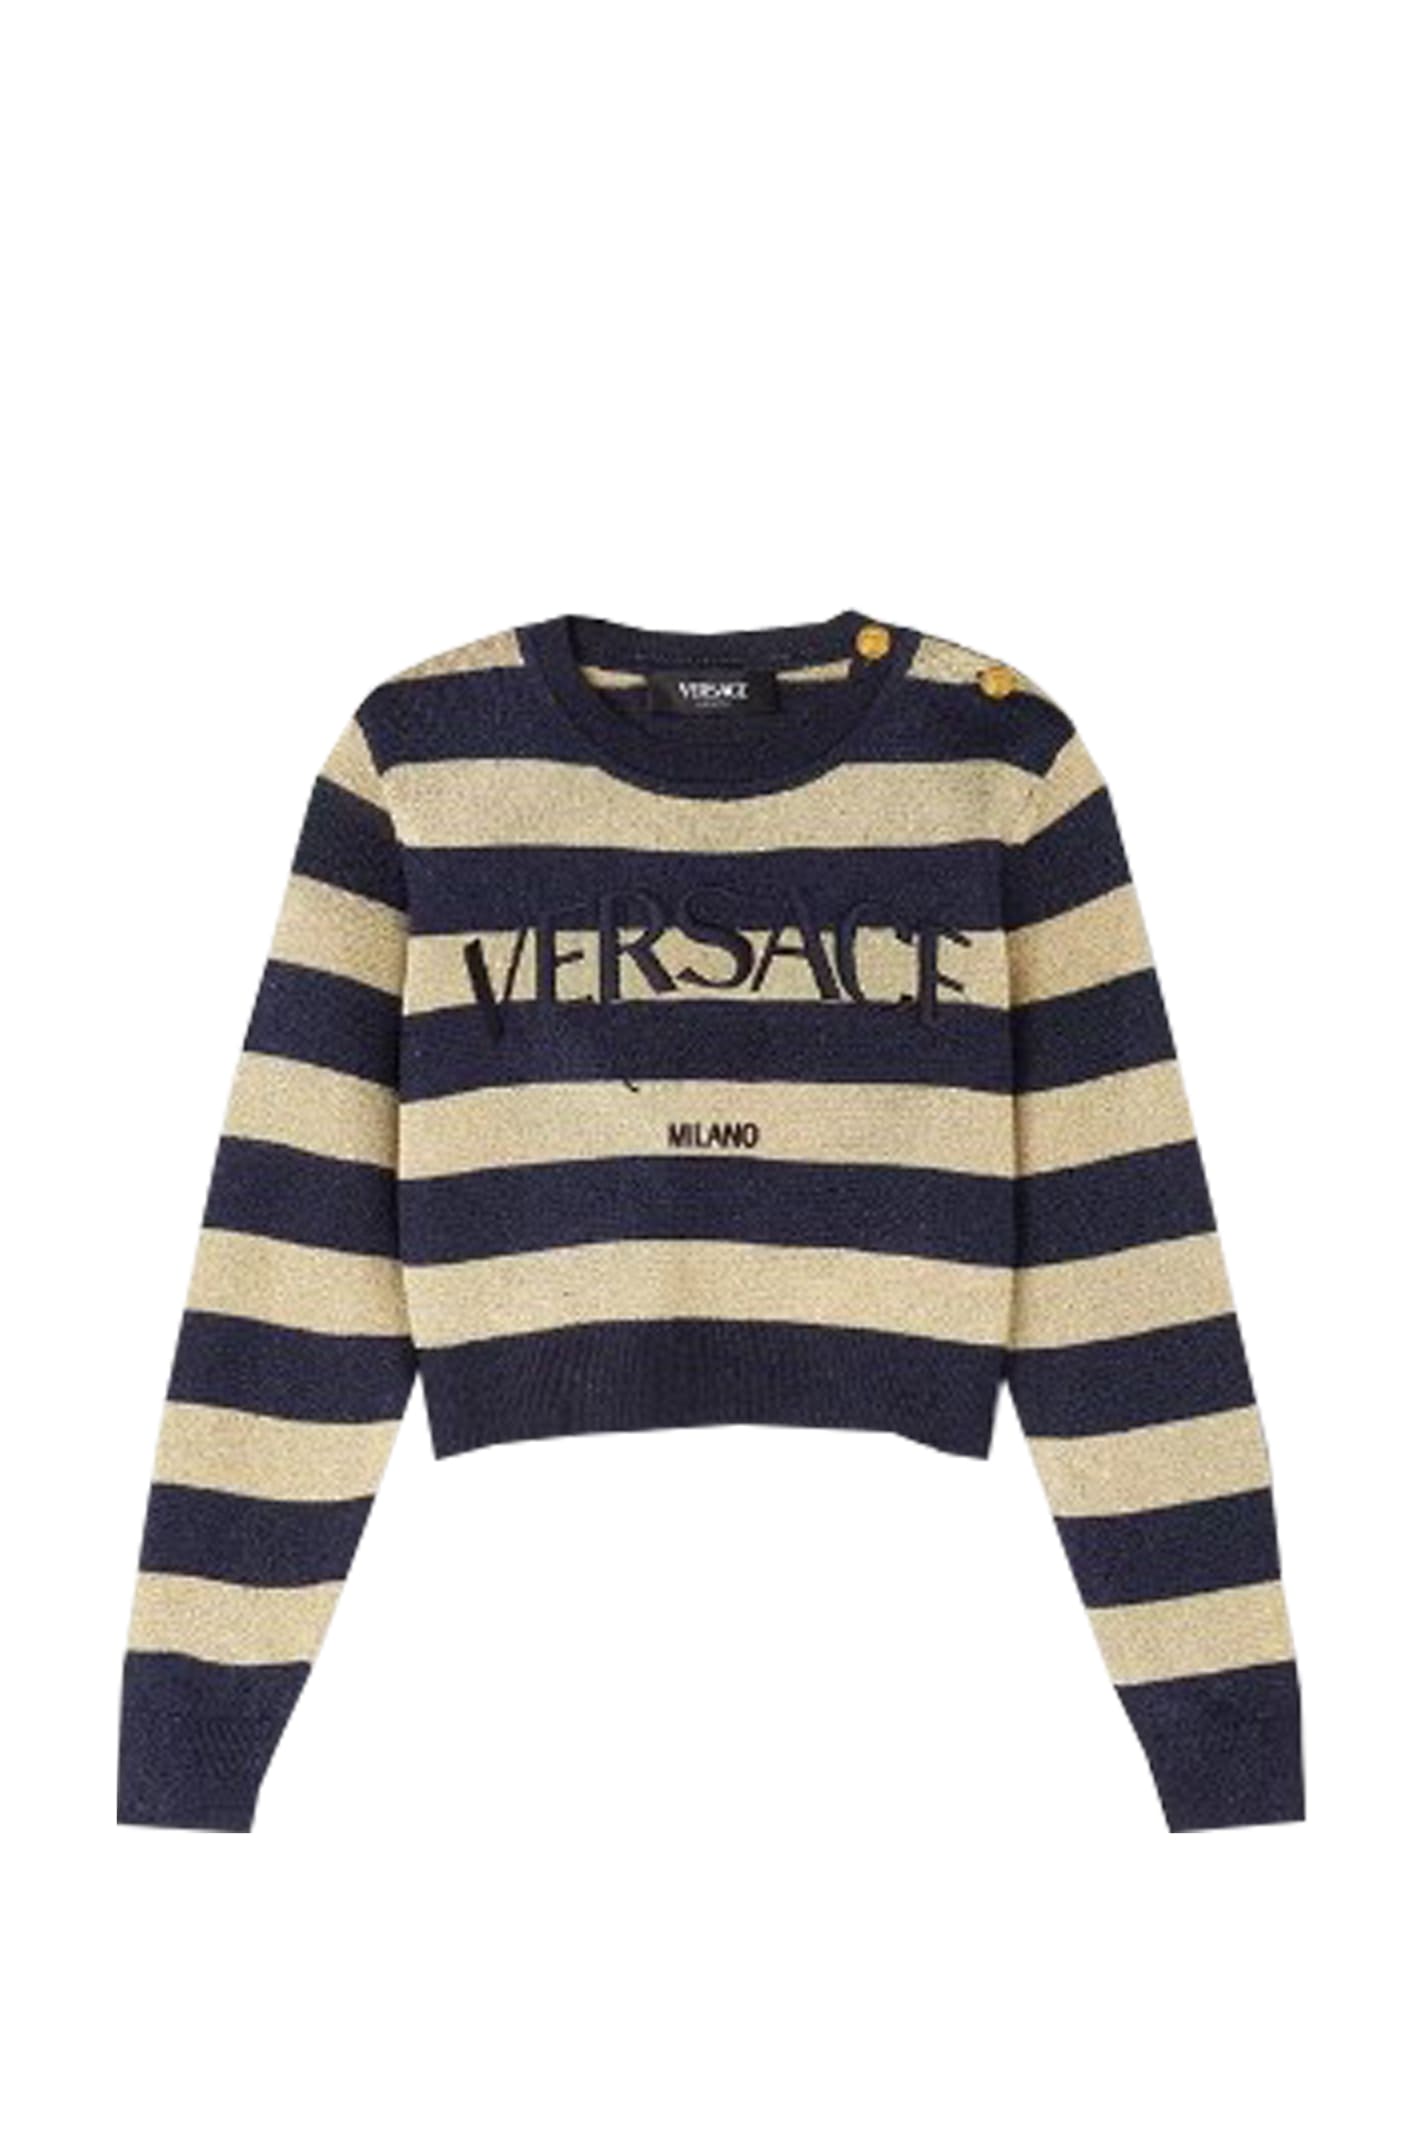 Shop Versace Sweatshirt In Blue